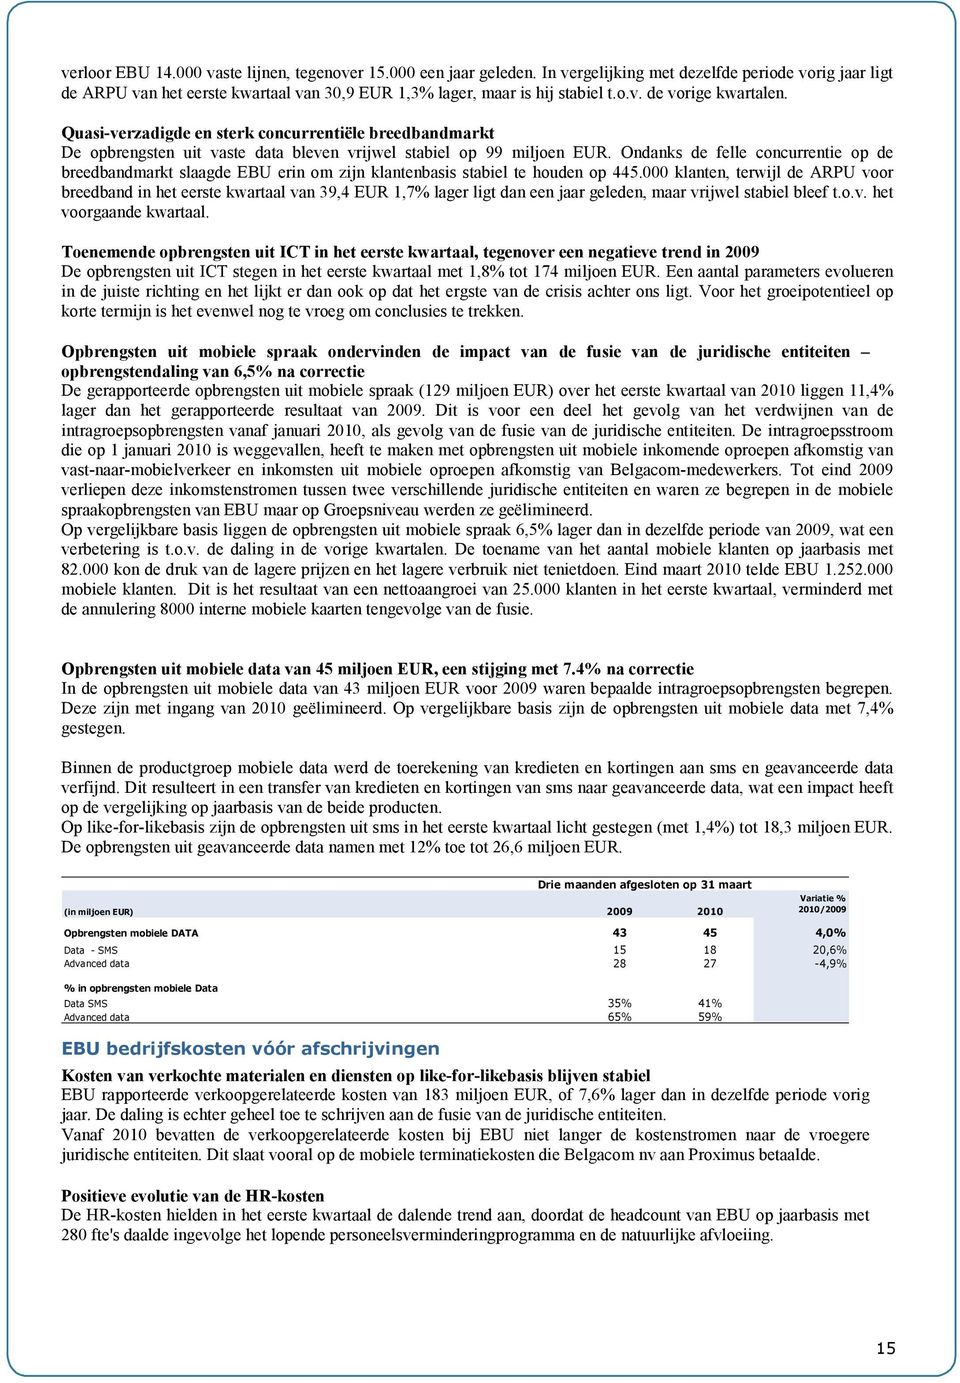 Ondanks de felle concurrentie op de breedbandmarkt slaagde EBU erin om zijn klantenbasis stabiel te houden op 445.